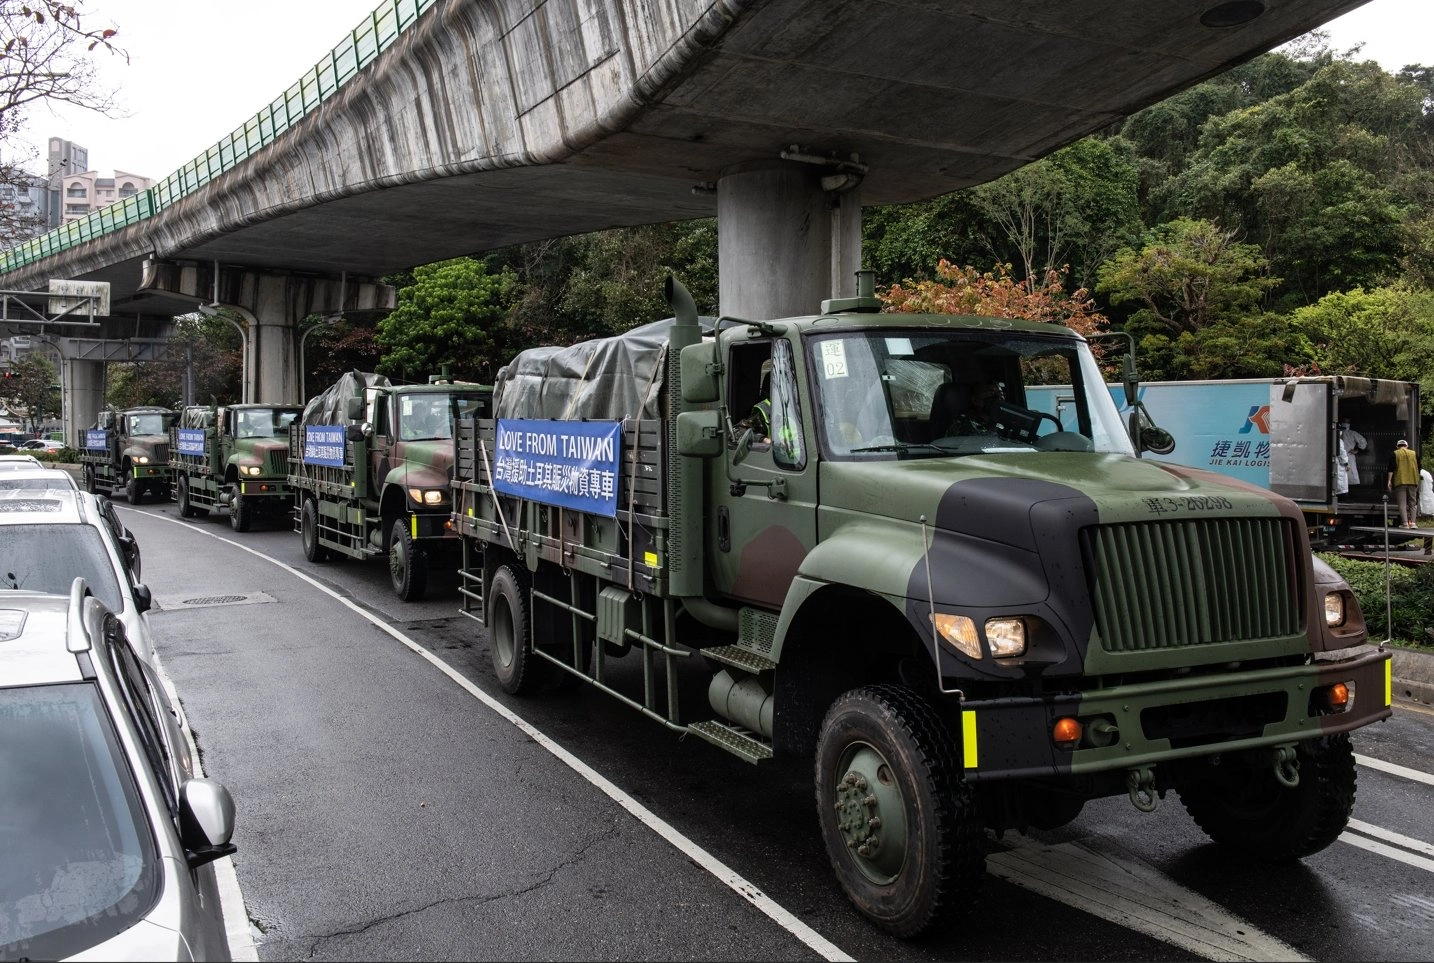 掛上「LOVE FROM TAIWAN台灣援助土耳其賑災專車」布條的軍車車隊出現在台北街頭。